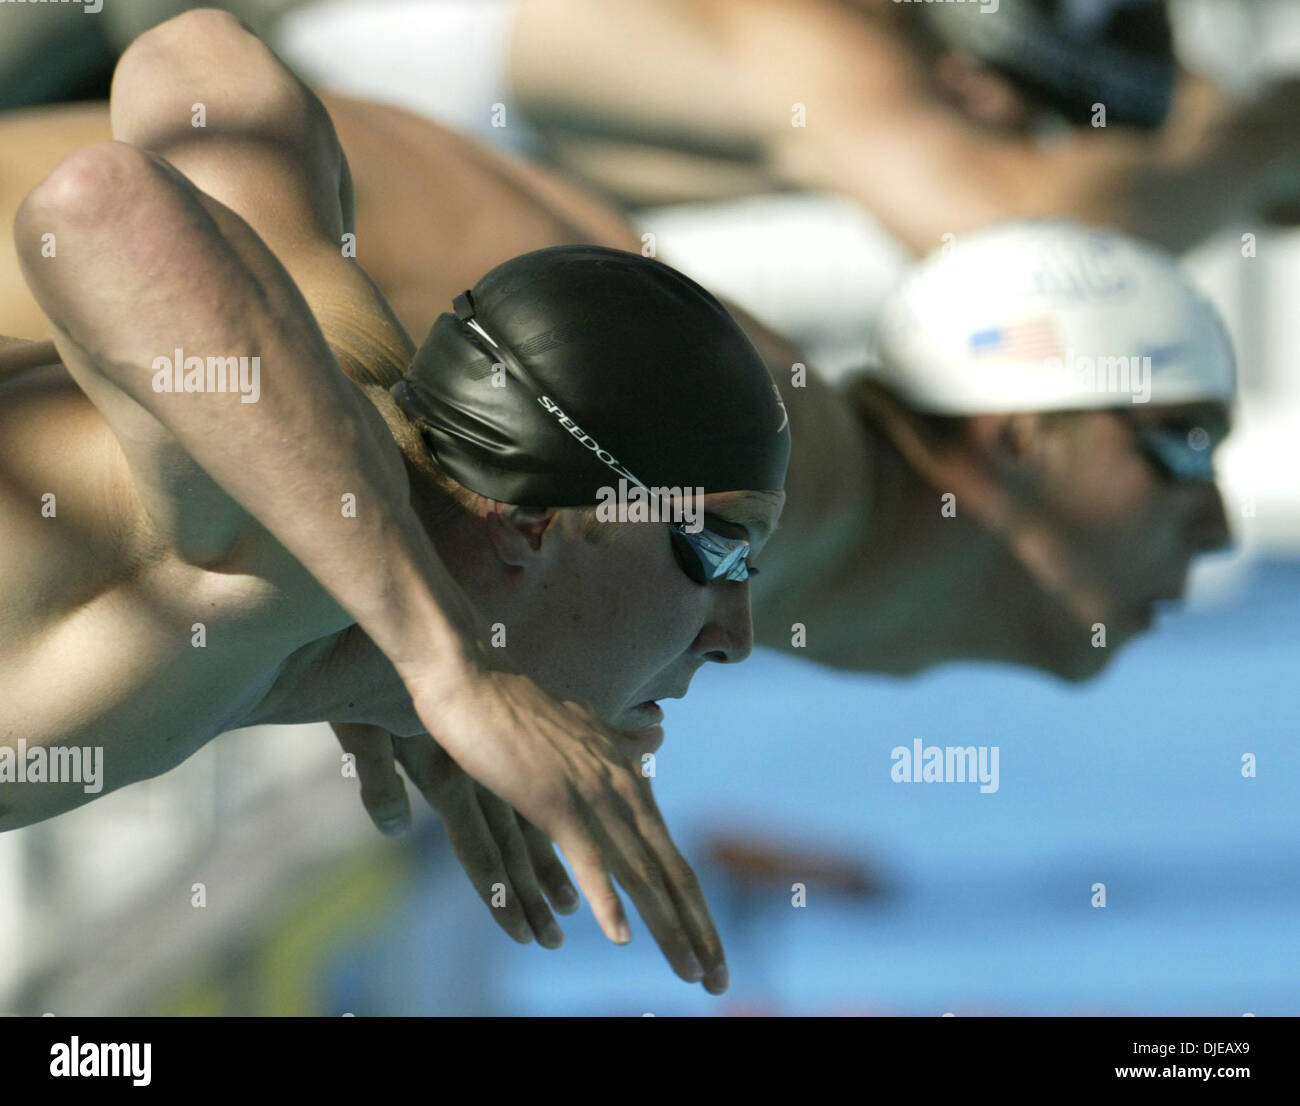 Jul 13, 2004 ; Long Beach, CA, USA ; (L-R) IAN Crocker de Longhorn Aquatics ET MICHAEL PHELPS en saut à la piscine pour le début de la mens 100 Papillon finale au procès de natation olympique des États-Unis à Long Beach. Crocker a nagé la course avec un nouveau record du monde de 50,76 secondes. Phelps a pris la deuxième place avec un temps de 51,15 secondes. Banque D'Images